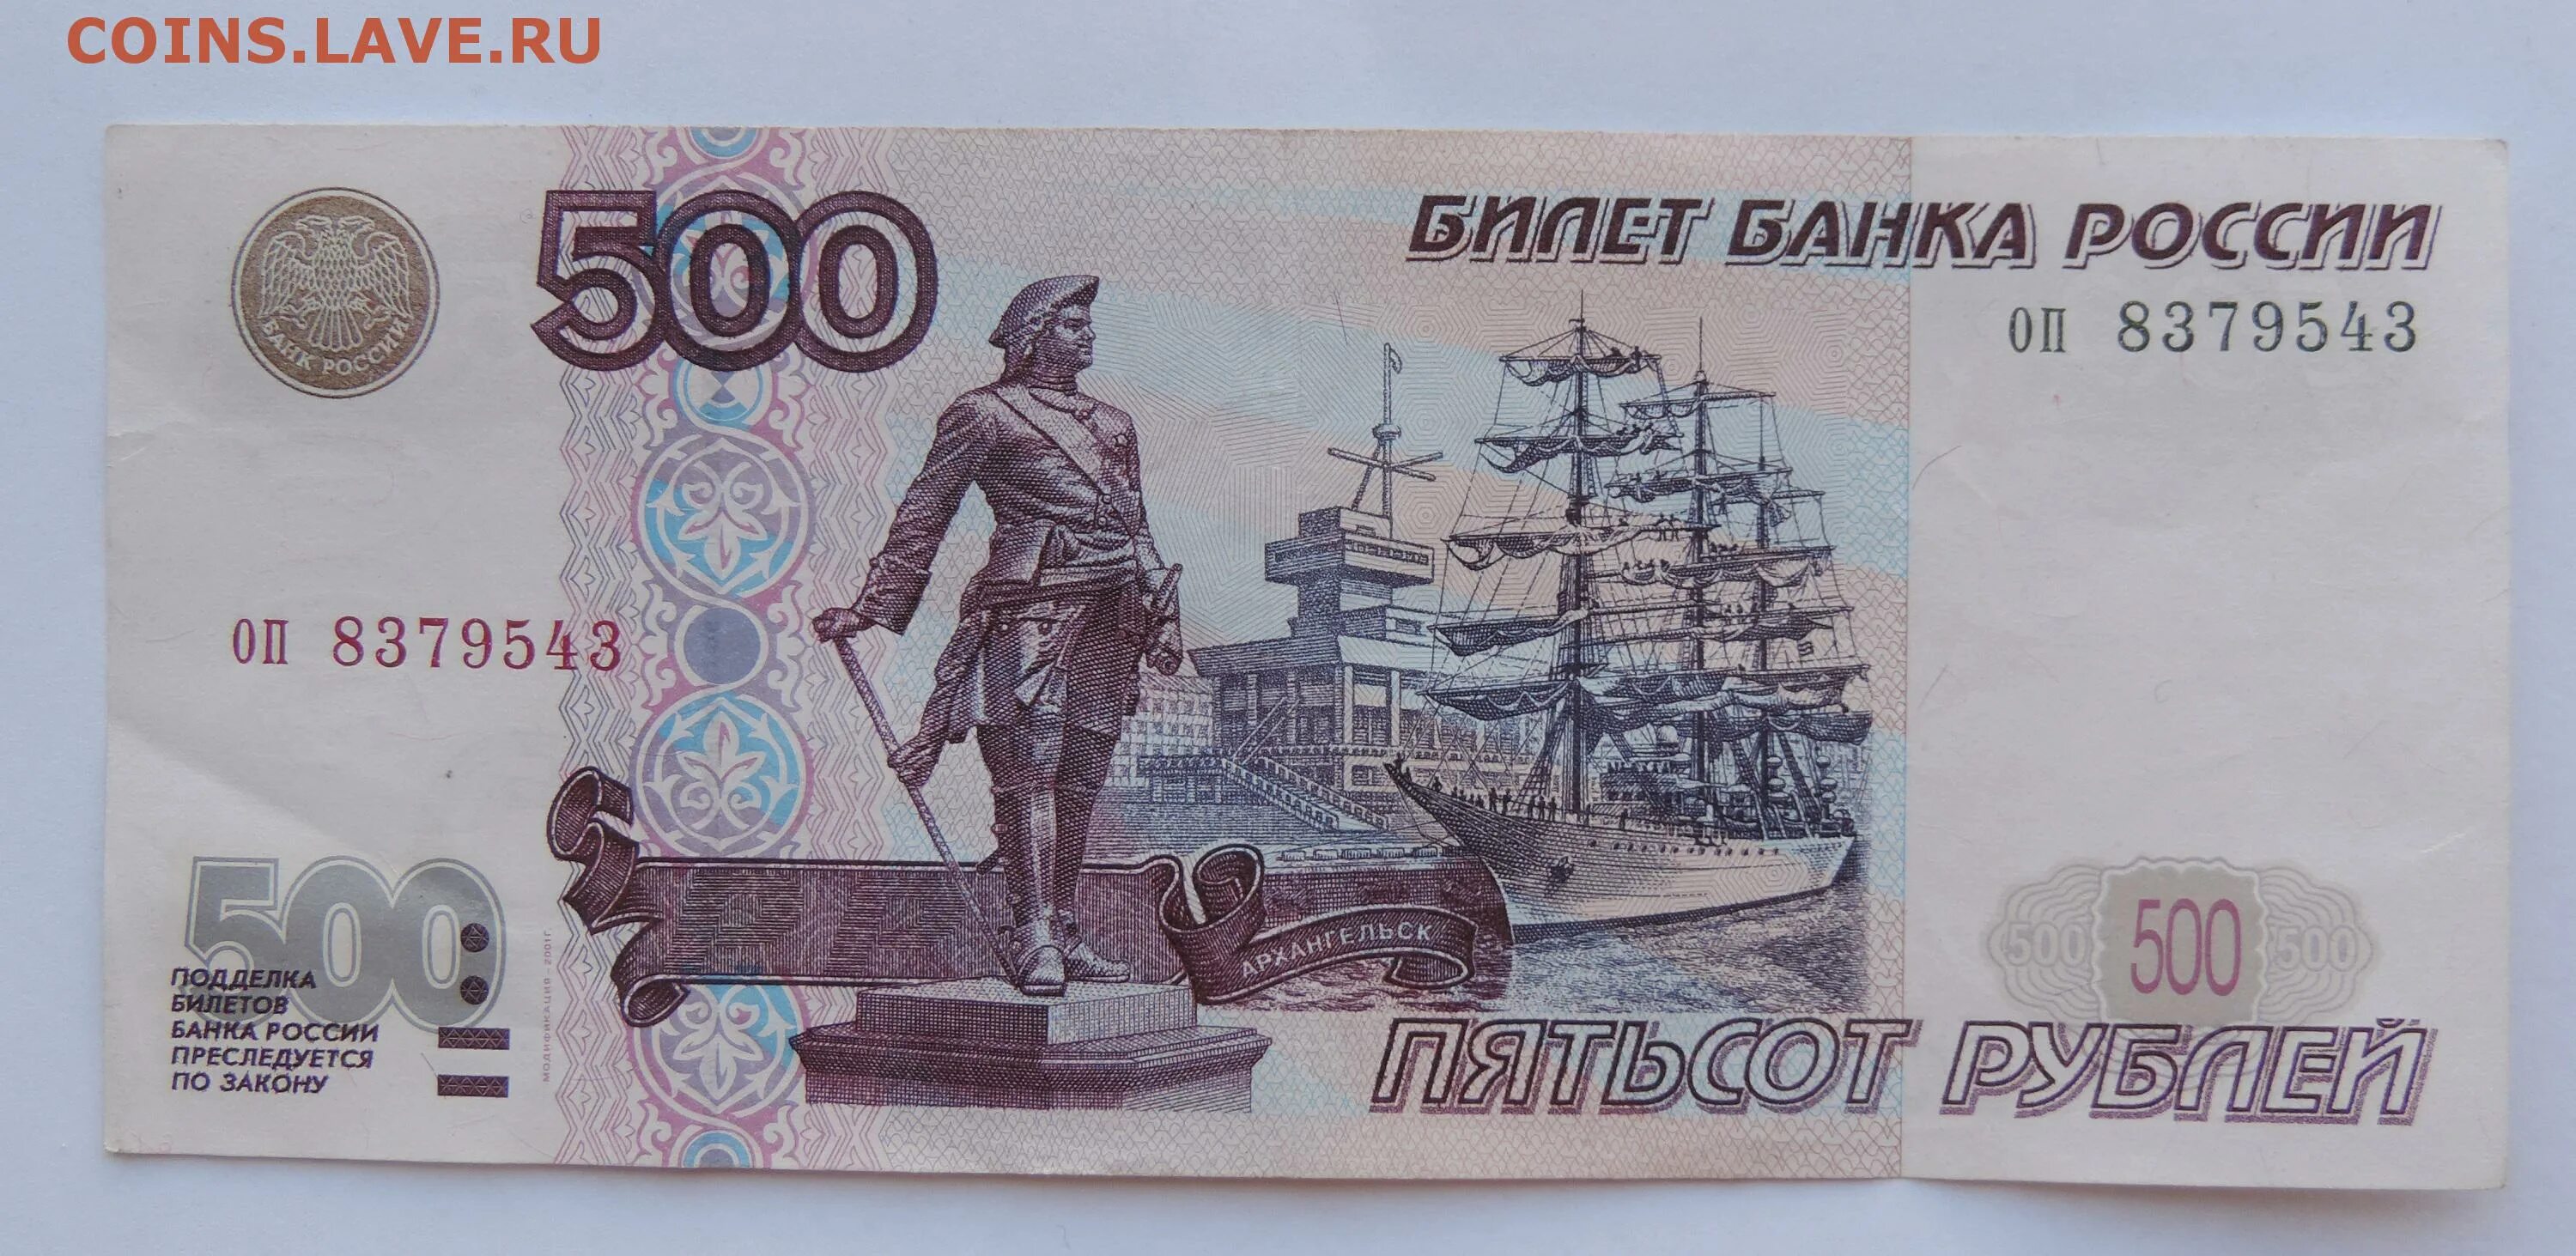 300 500 рублей. Купюра 500 рублей. 500 Рублей. 500 Рублей с корабликом. Купюра 500 рублей с корабликом.